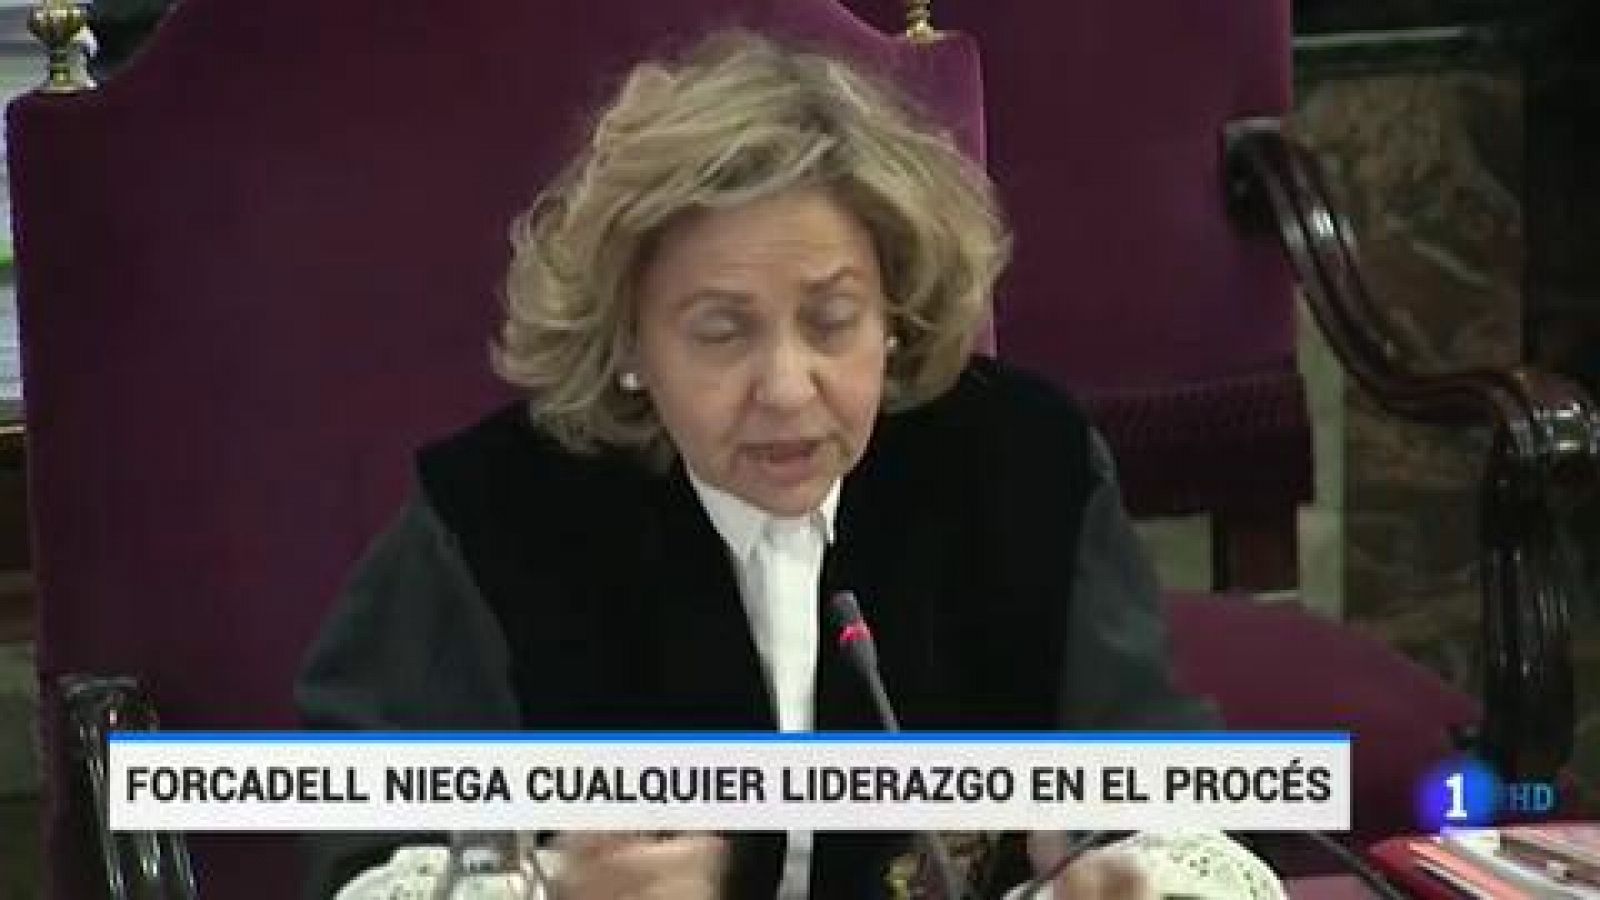 Juicio 'procés': Carme Forcadell se desvincula del liderazgo en el 'procés' - RTVE.es